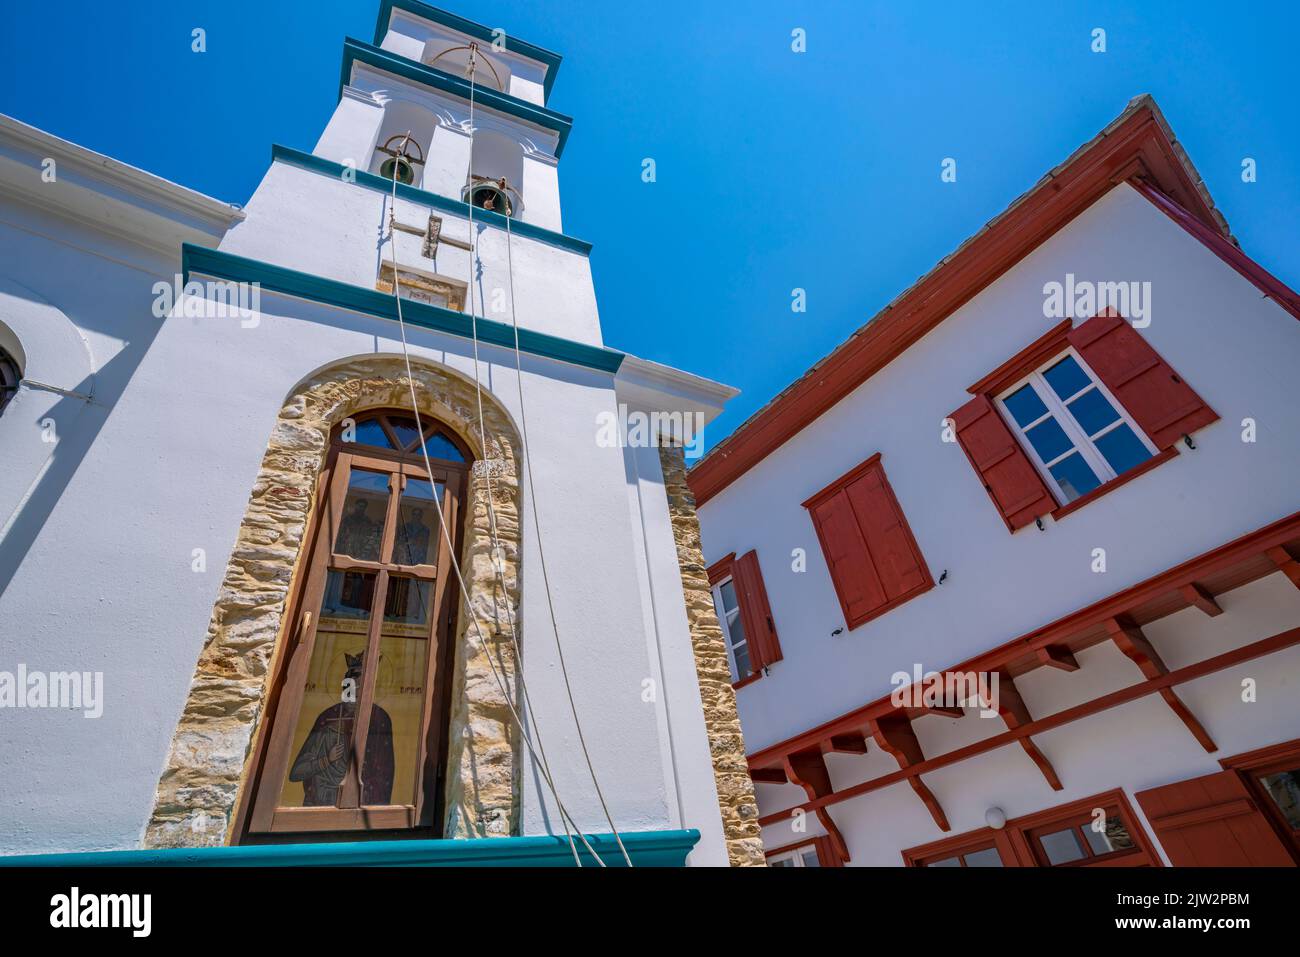 Vue sur l'église blanchie à la chaux, la ville de Skopelos, l'île de Skopelos, les îles Sporades, les îles grecques, Grèce, Europe Banque D'Images